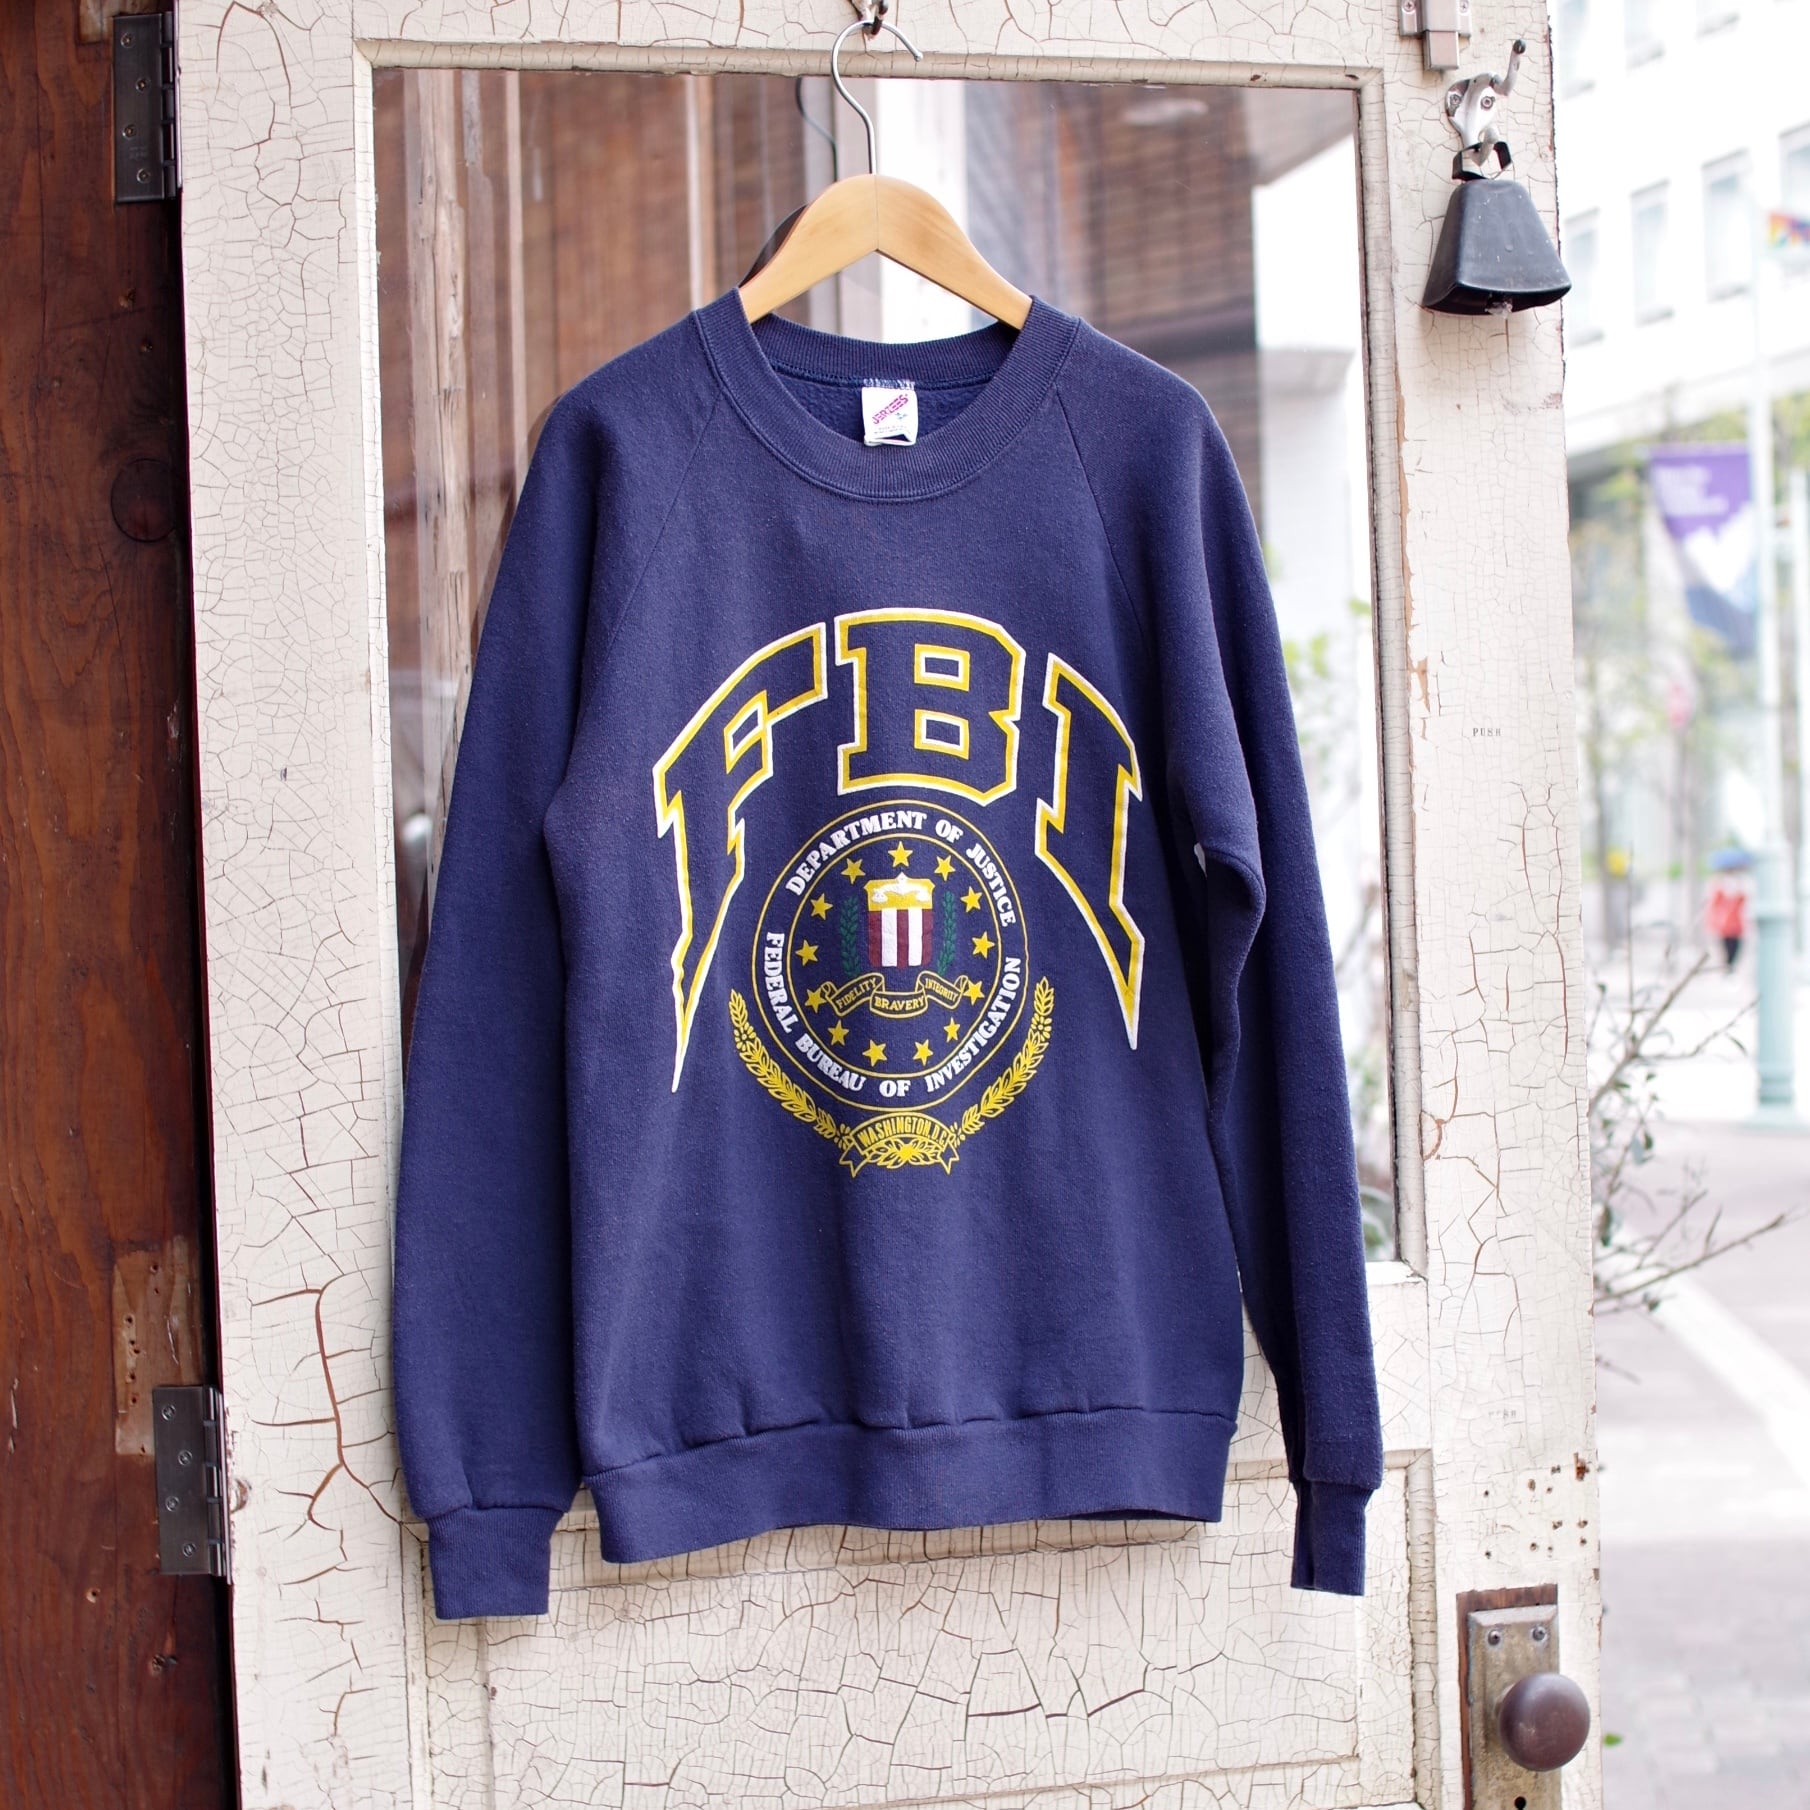 【アメリカ製】90’s vintage print sweatshirt